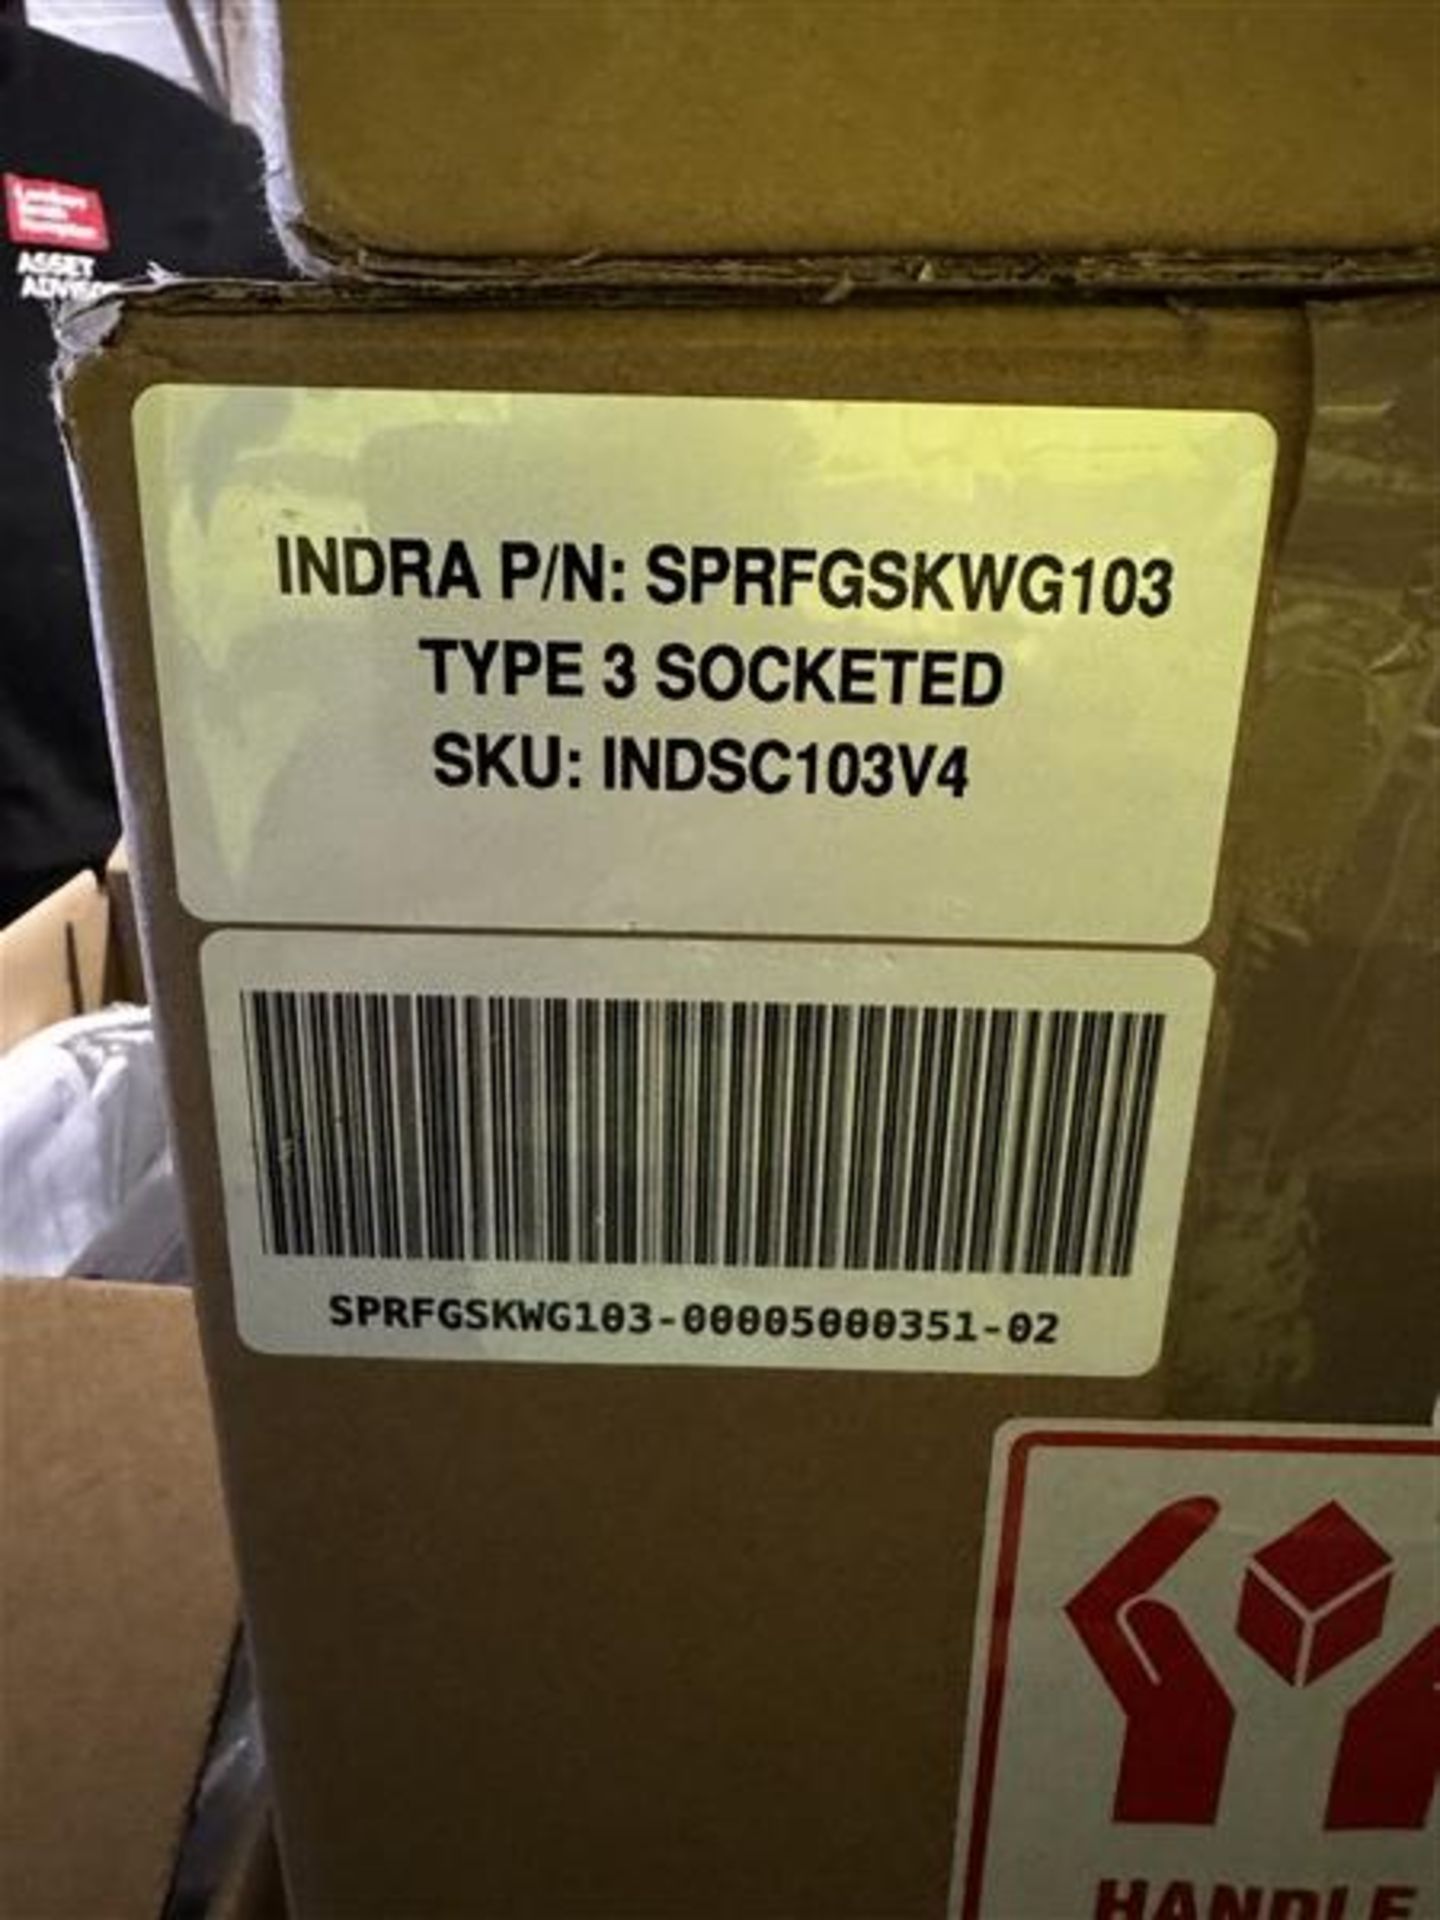 Indra Type 3 socketed electric car charger, part no. SPRFGSKWG103, SKU: INDSC103V4